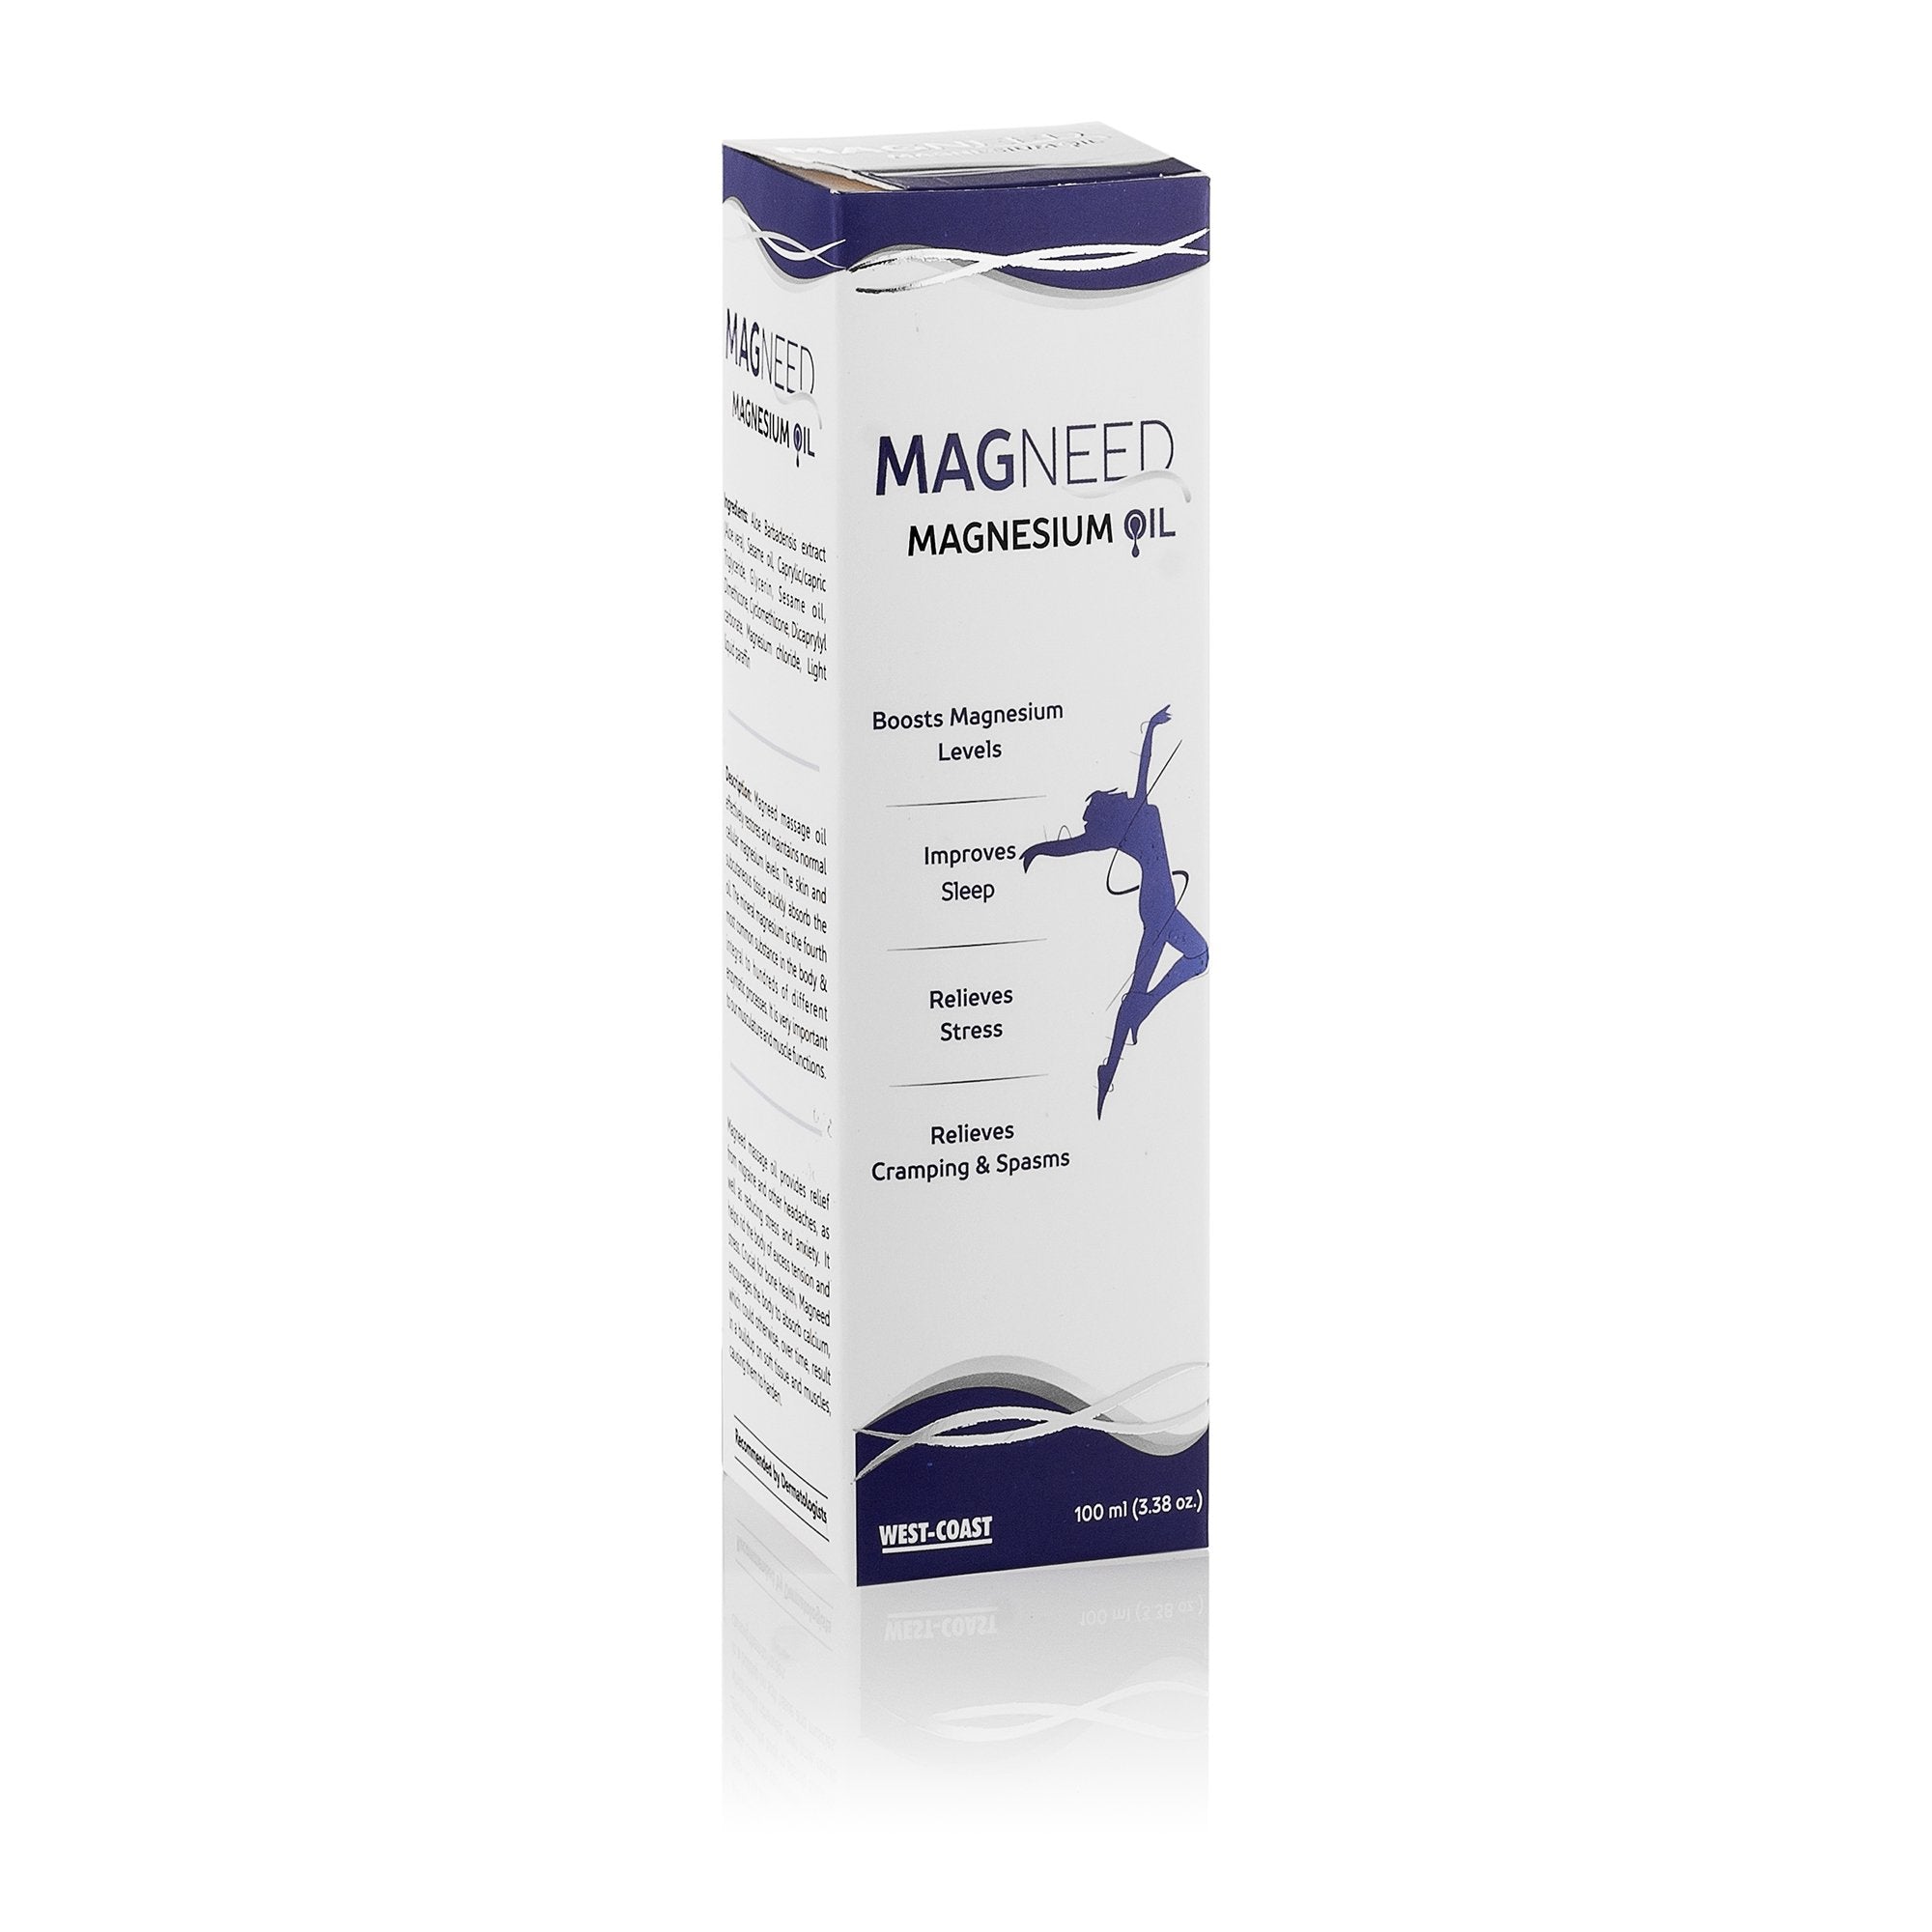 West Coast Magneed Magnesium Oil 100ml Spray - Effective Rapid Transdermal Absorption